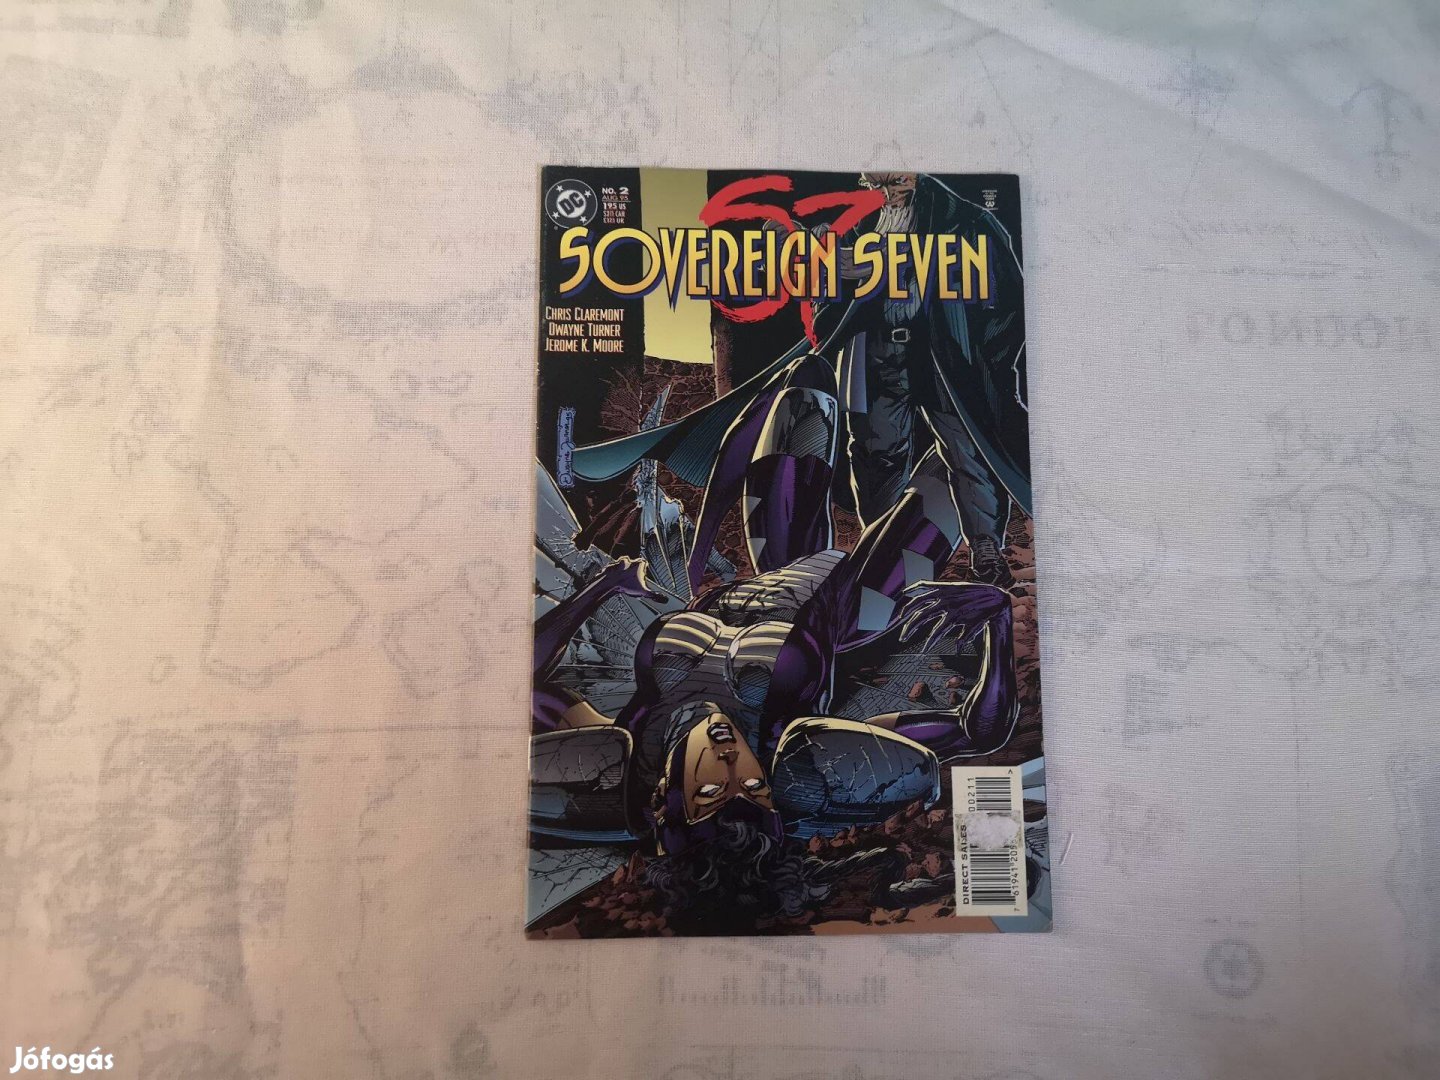 Sovereign Seven No. 2. Aug '95 (angol)